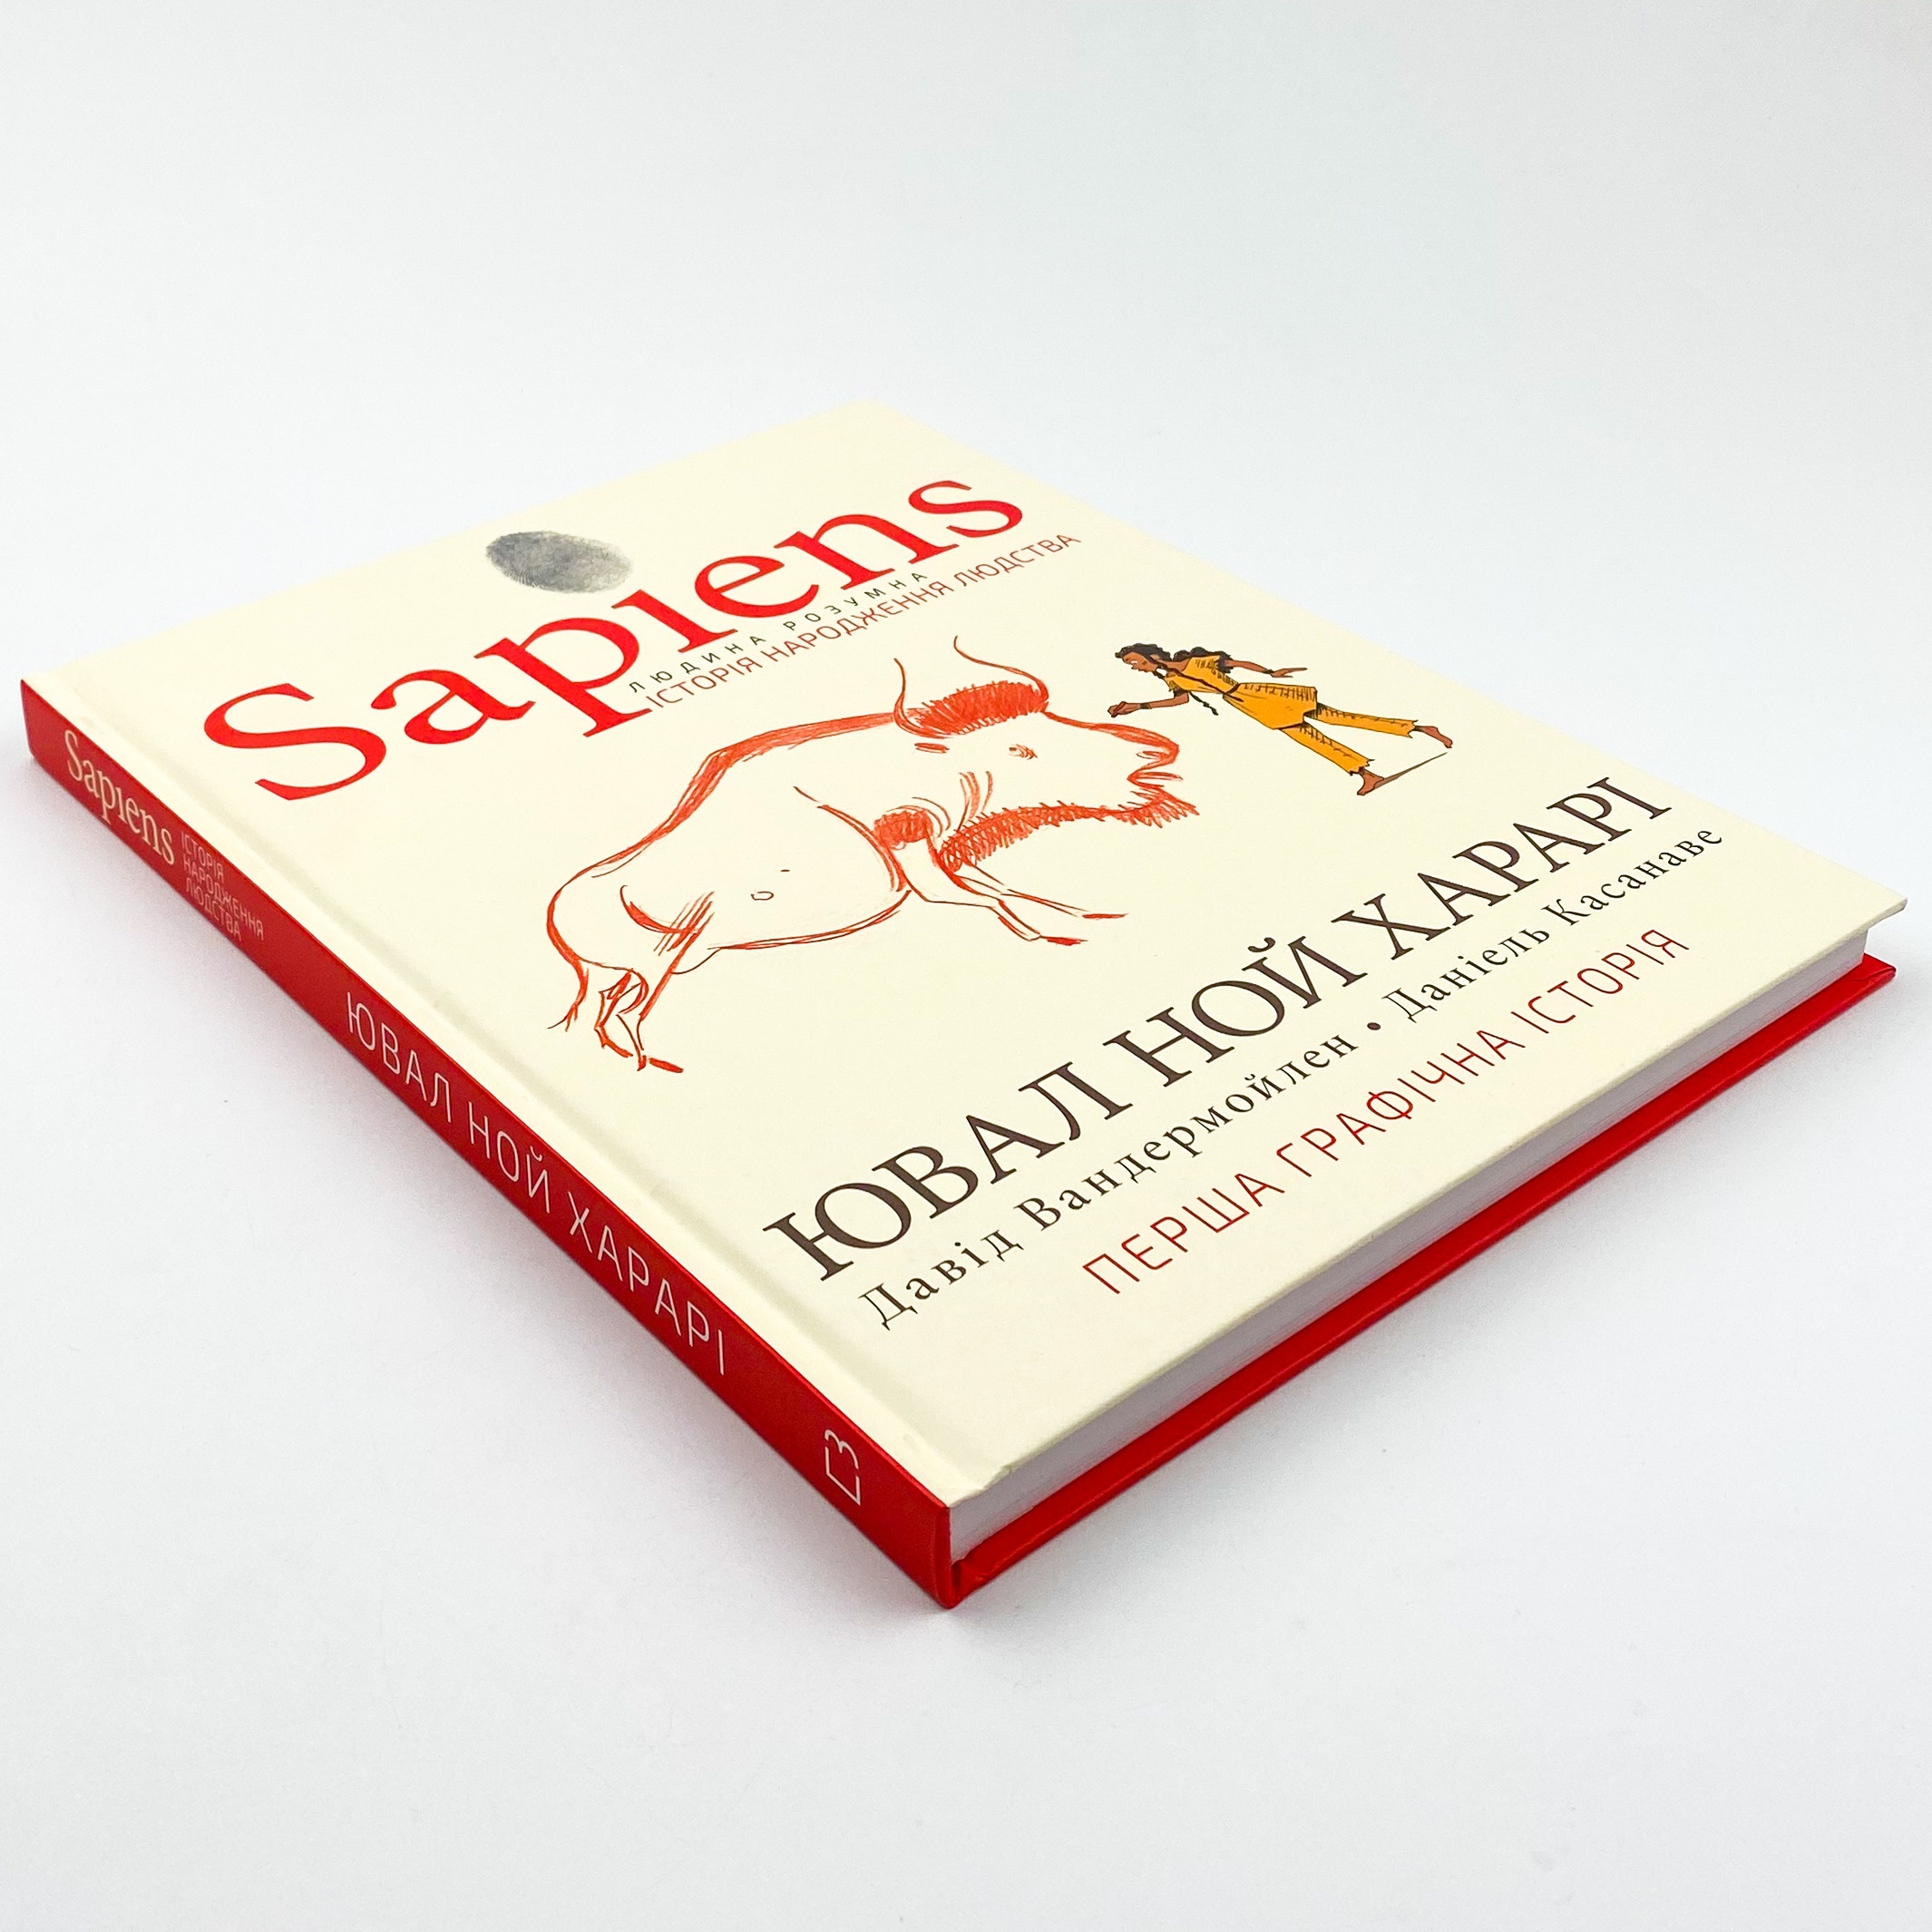 Sapiens. Історія народження людства. Том 1. Автор — Юваль Ной Харари, Девід Вандермьолен. 